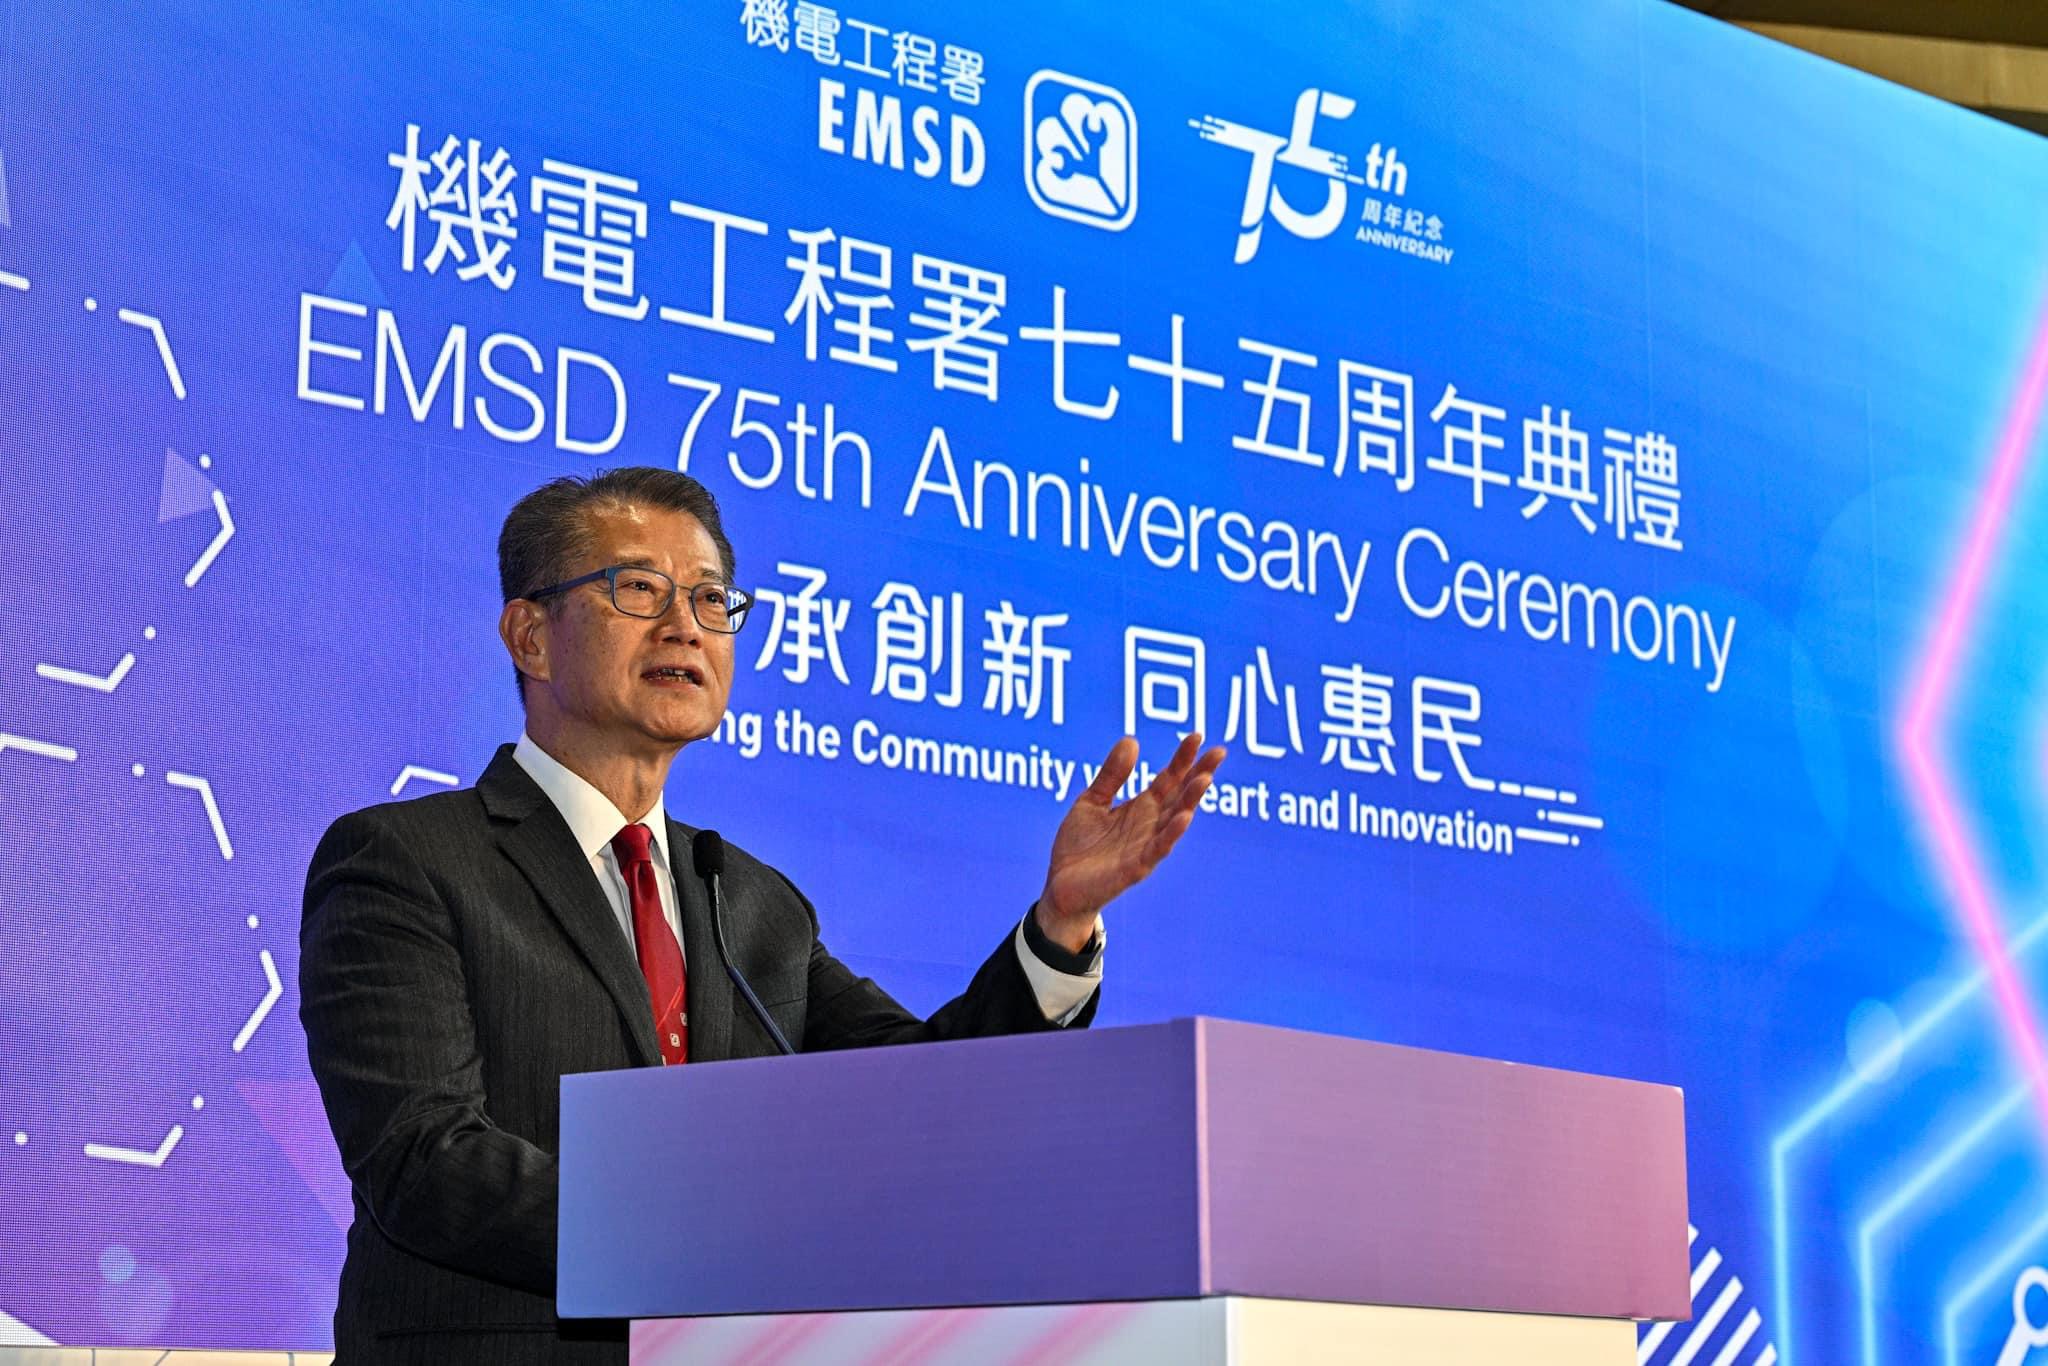 财政司司长陈茂波先生为机电工程署七十五周年典礼担任主礼嘉宾并致词。